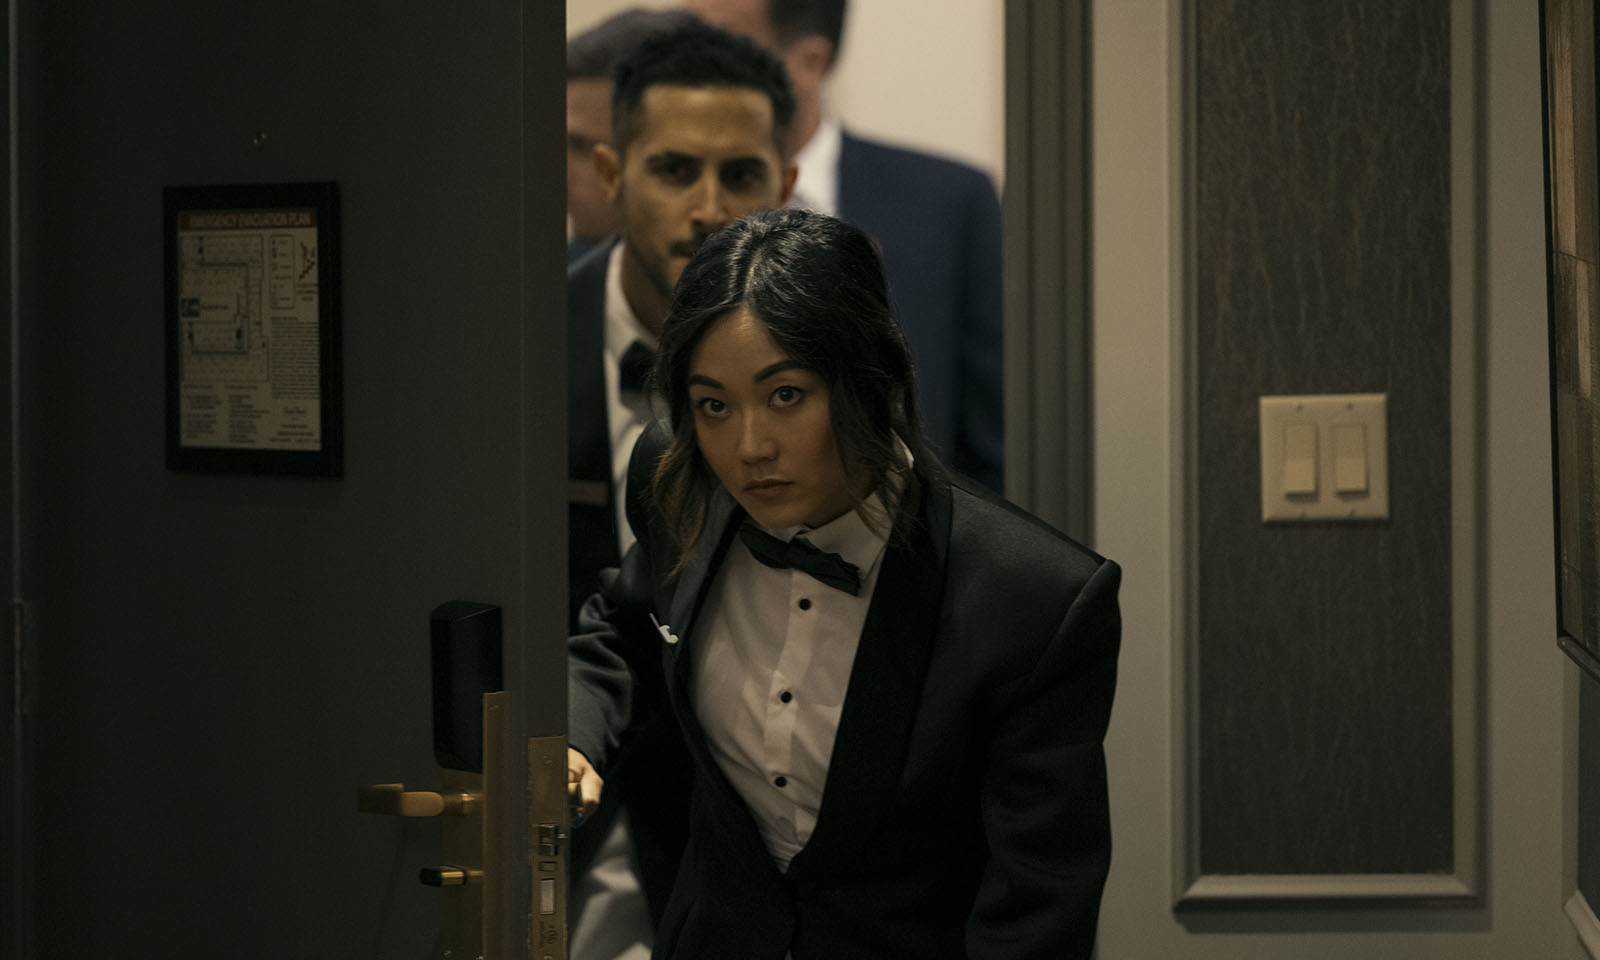 Kimiko e Frenchie (Francês) entrando no quarto de hotel onde Victoria Neuman está hospedada em cena do episódio 1 da 4ª temporada de The Boys.